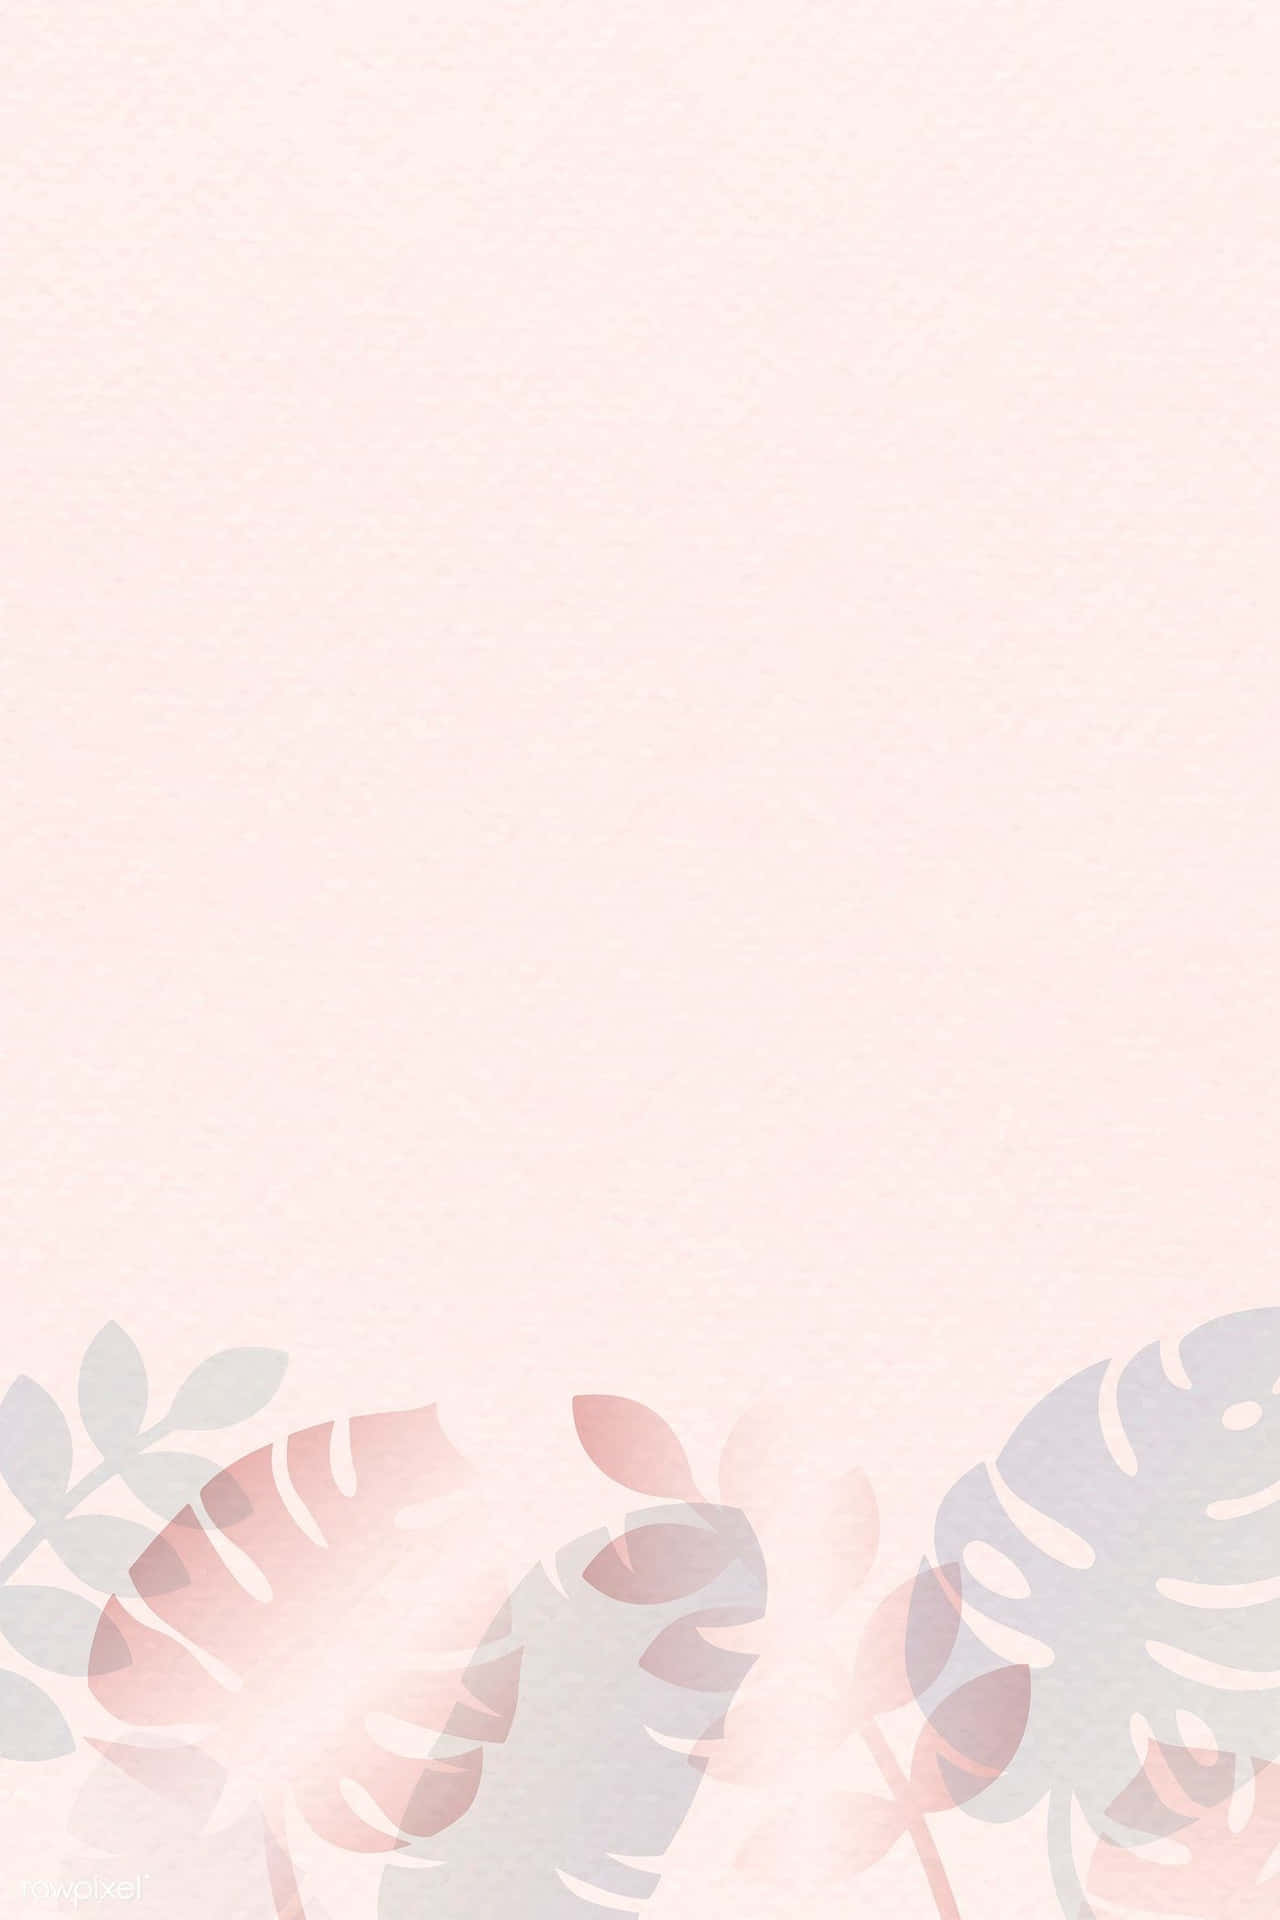 Soft and Subtle Light Pink Pastel Background